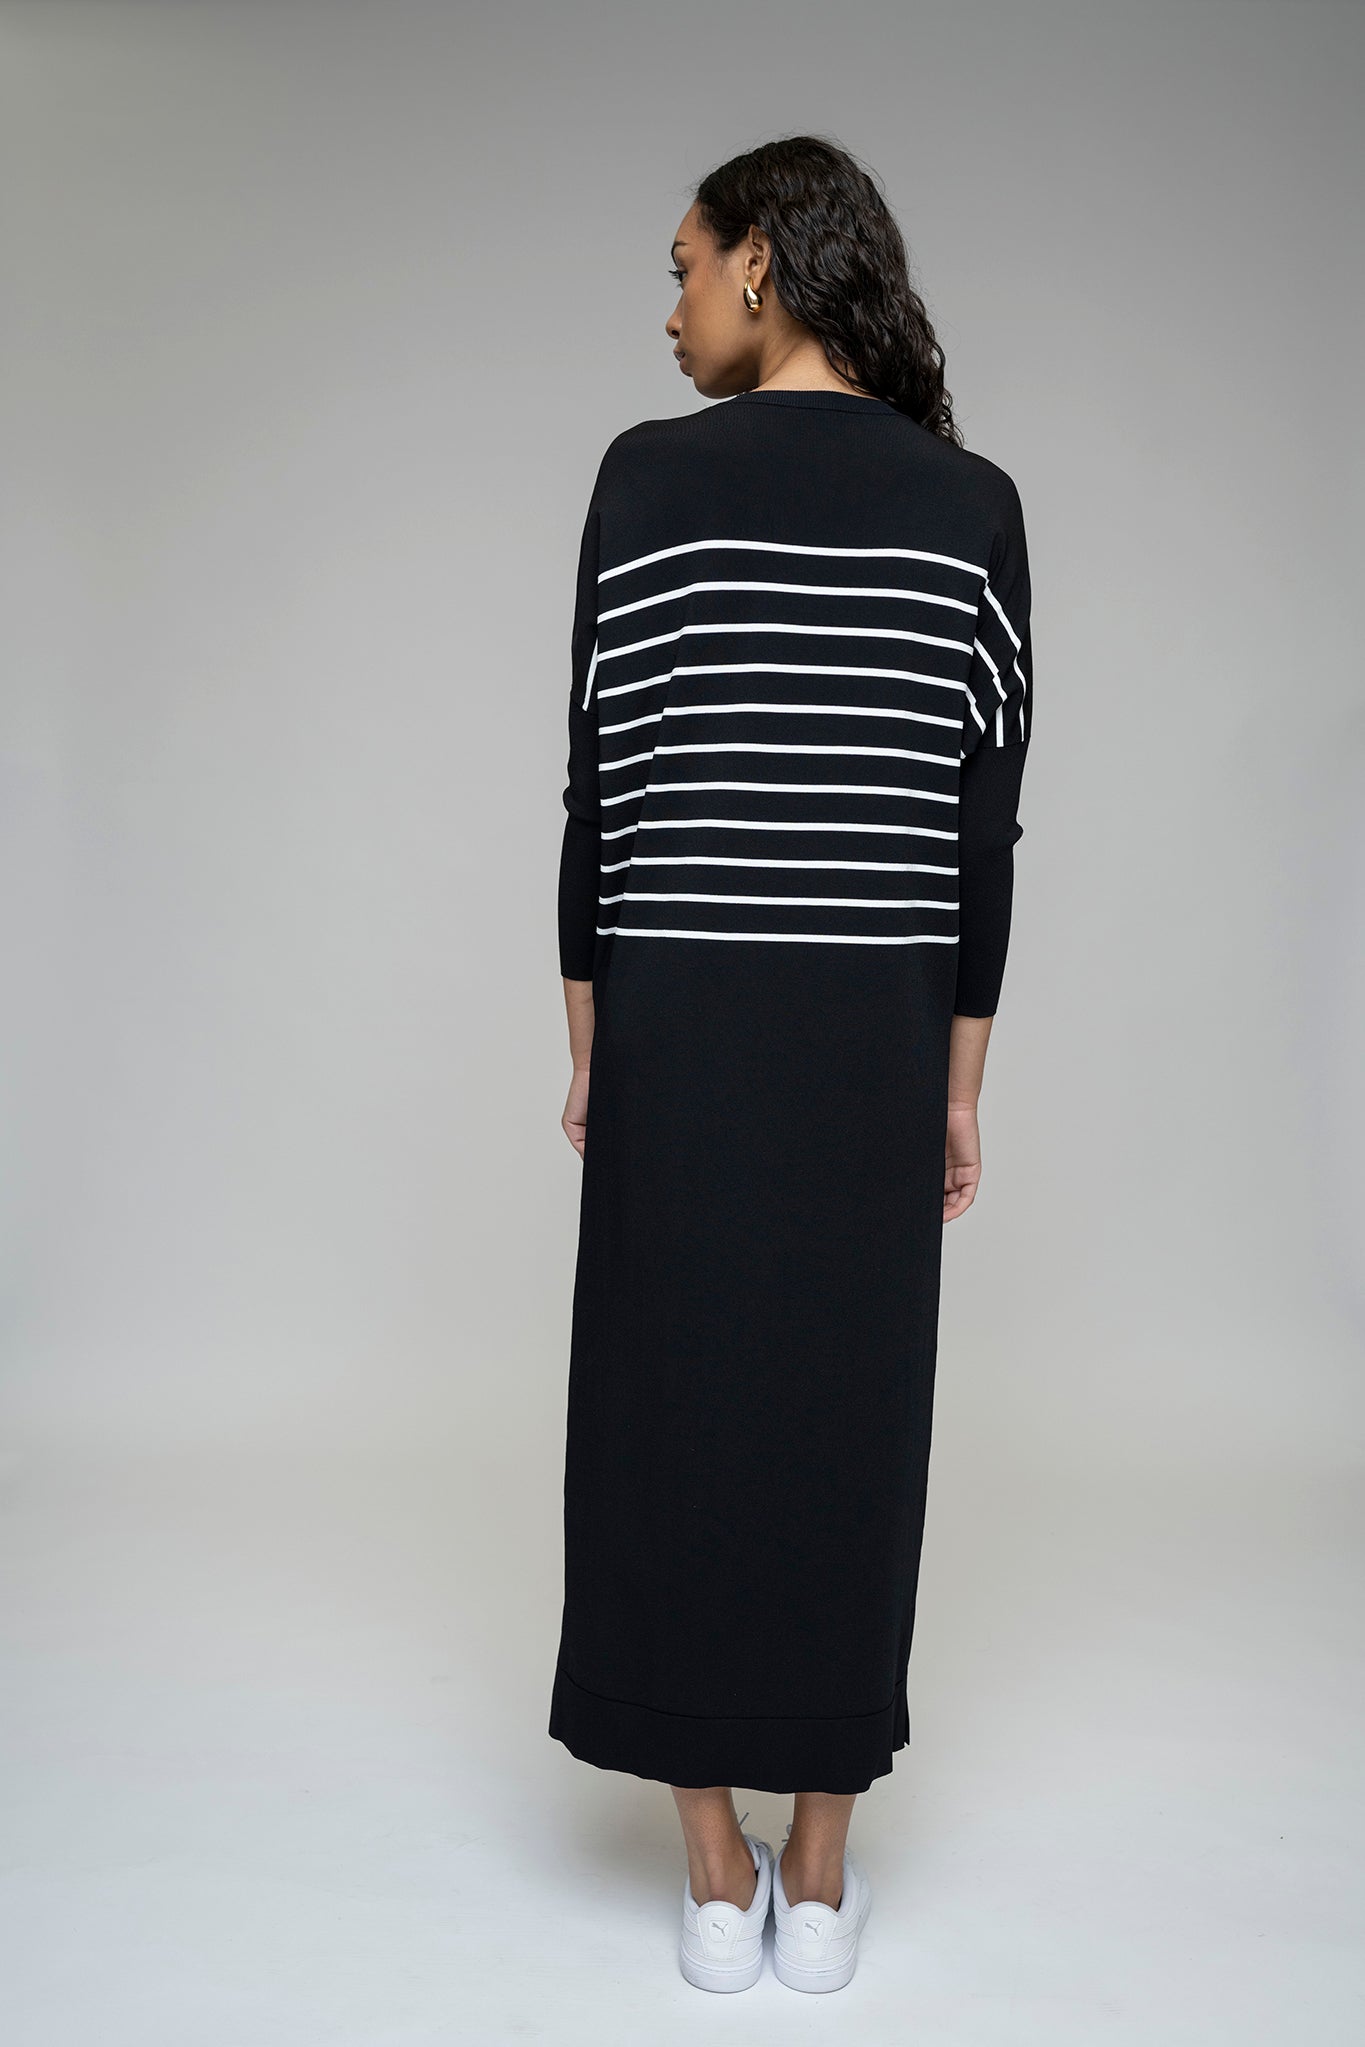 The Perilla Dress in Black/White Stripe